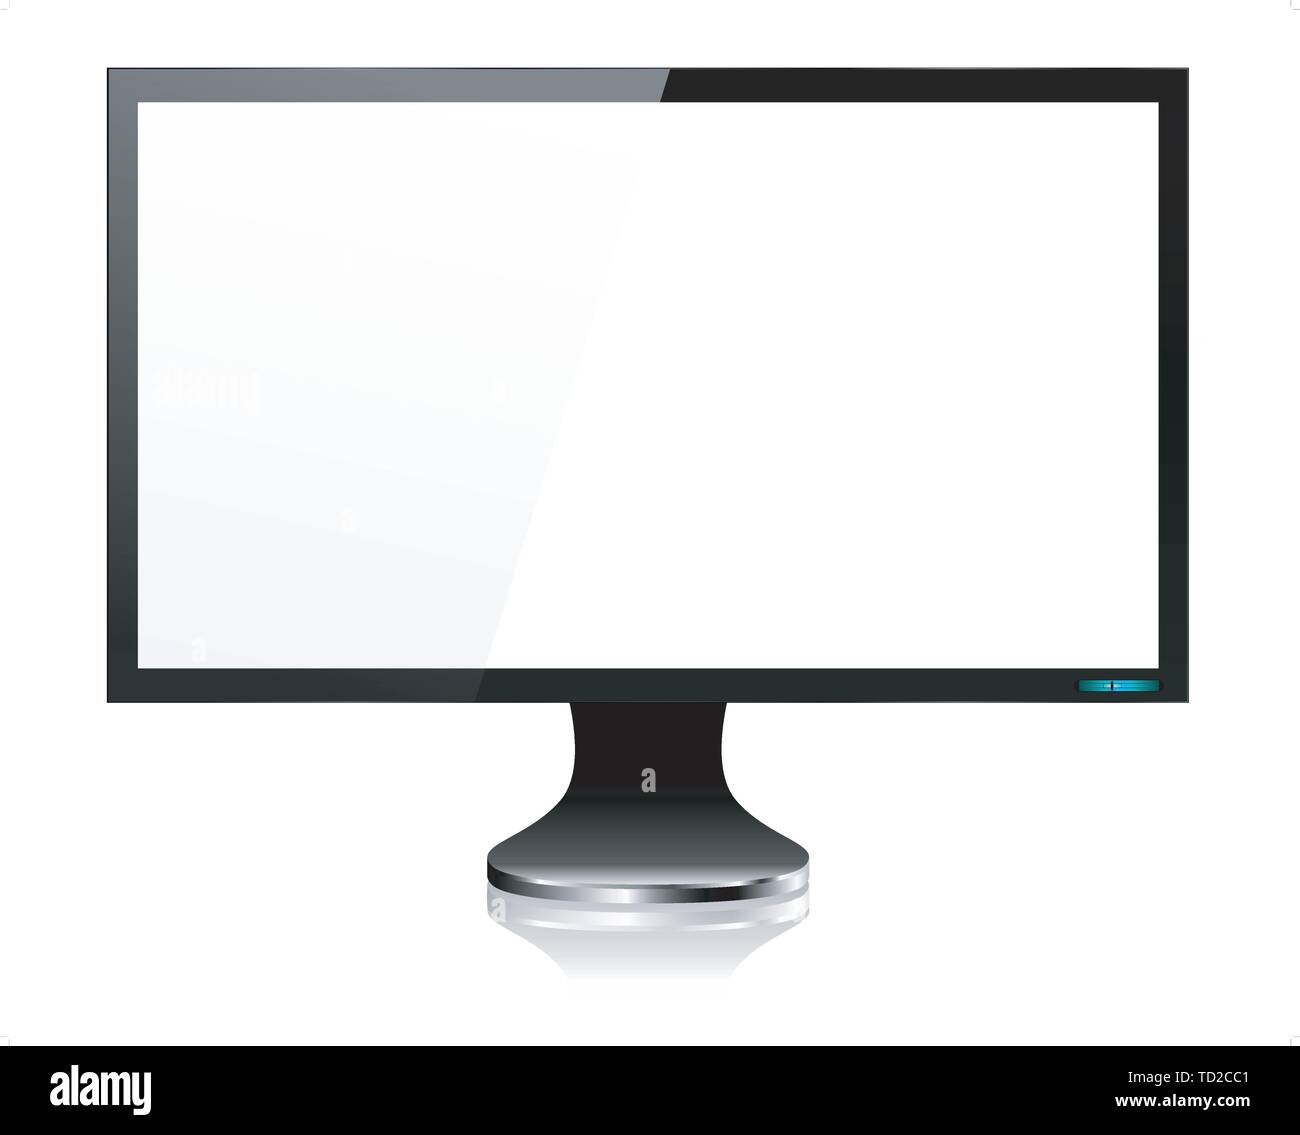 Écran LCD moniteur Ordinateur - scénario avec les éléments groupés, nommé Couches et avec une couche distincte d'ajouter facilement vos propres images pour écran EPS10 Illustration de Vecteur